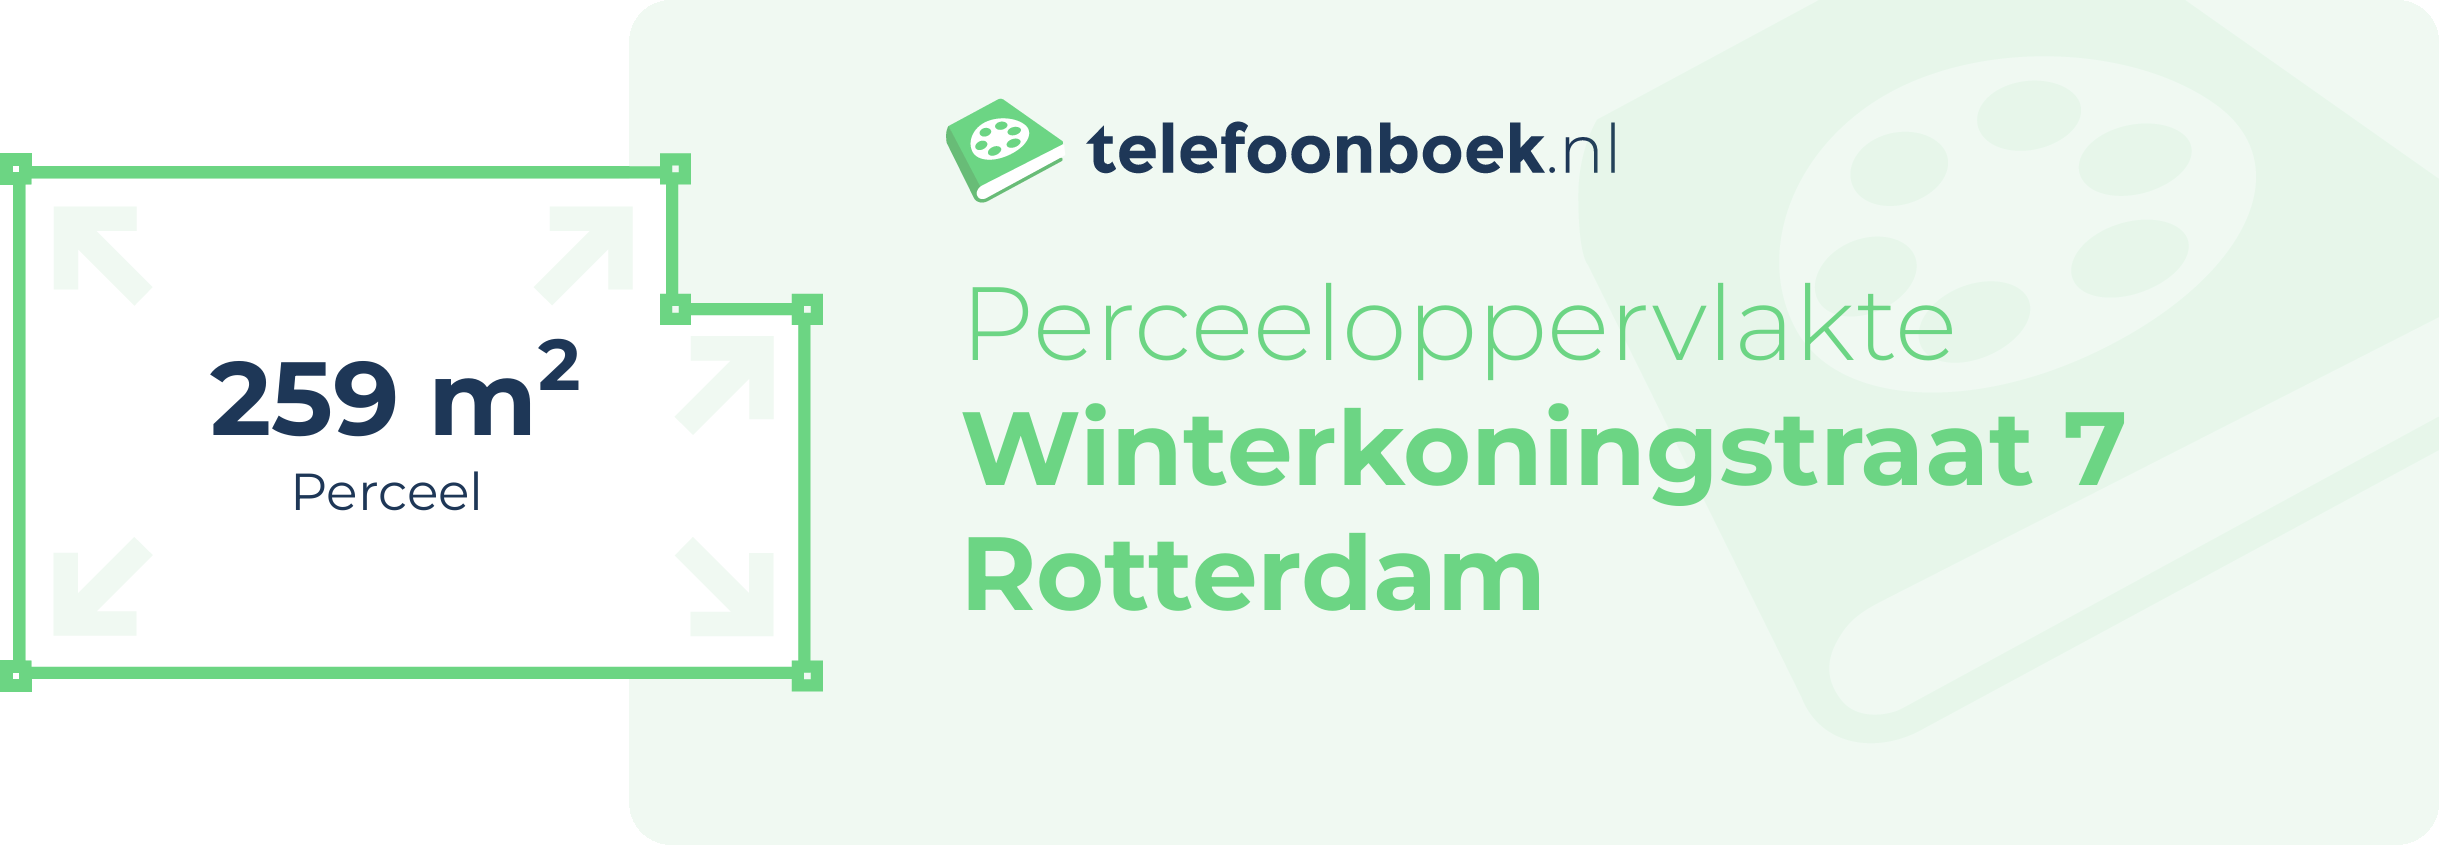 Perceeloppervlakte Winterkoningstraat 7 Rotterdam